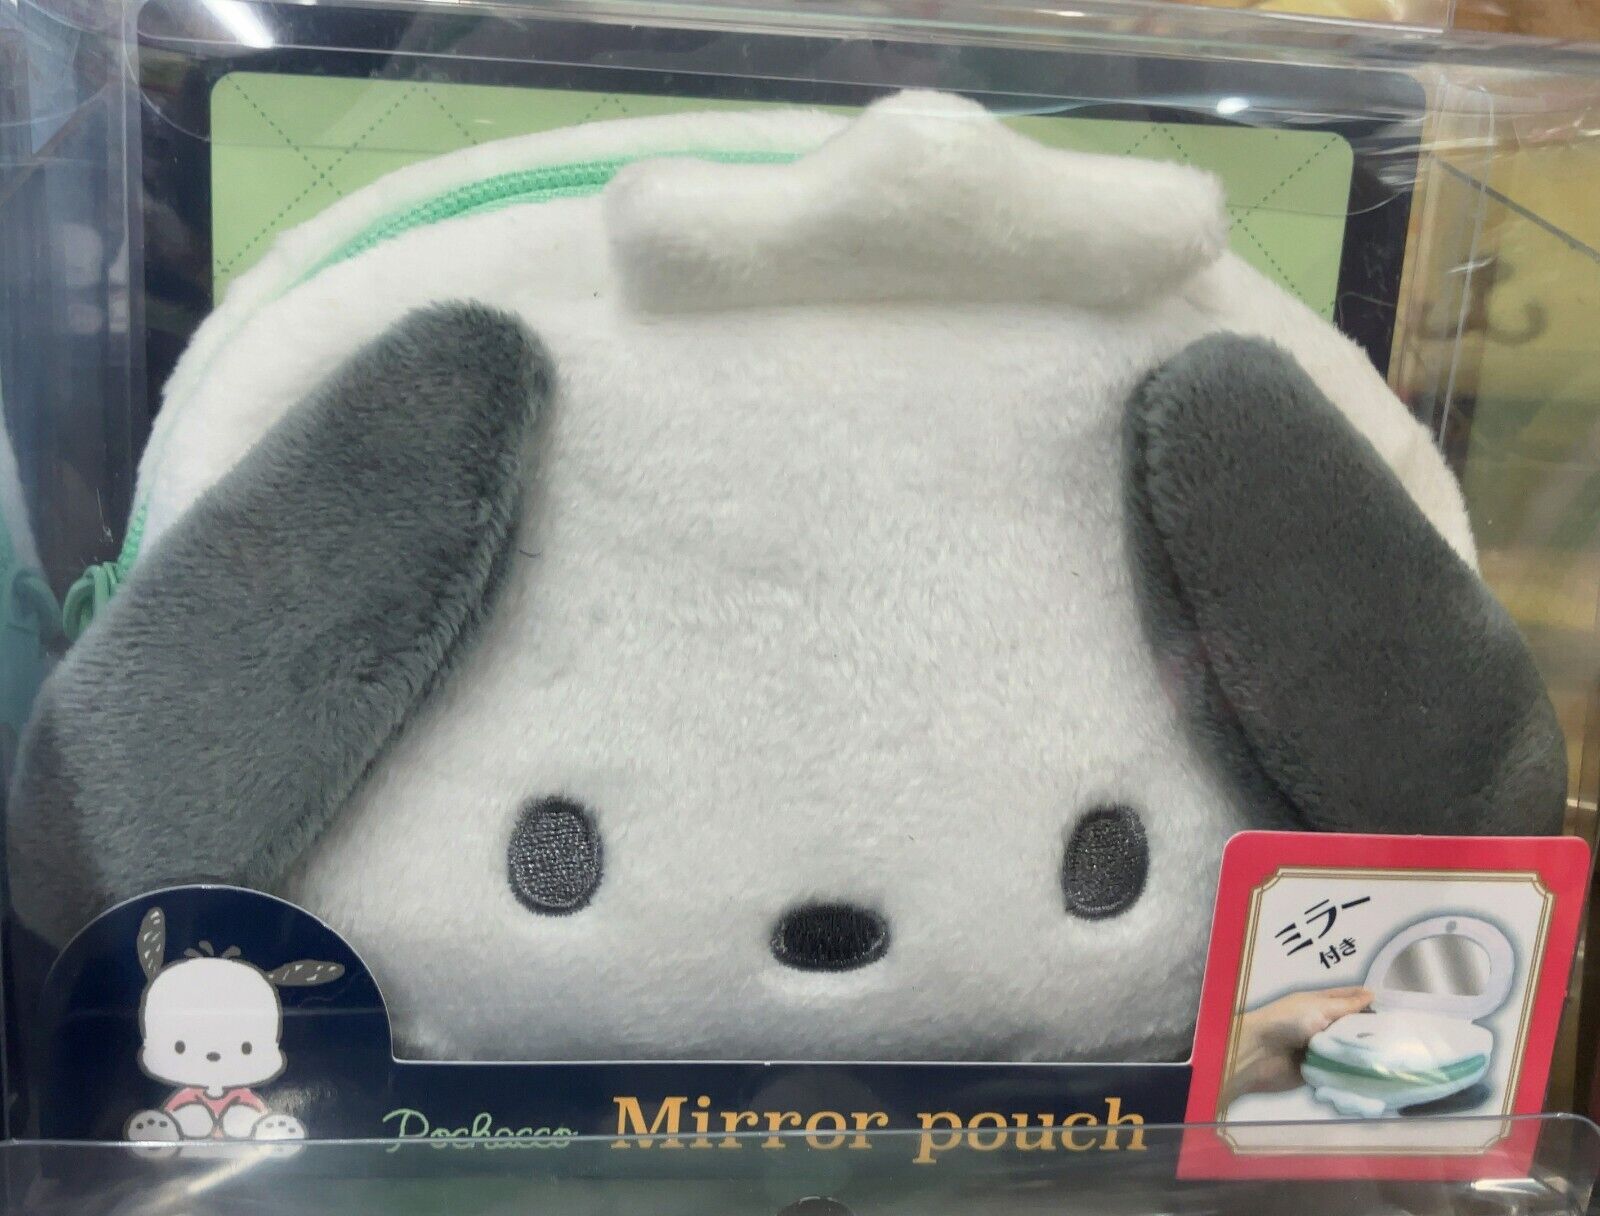 Sanrio Character Pochacco Plush Boa Mirror Pouch Cosmetic Accessory Pouch New